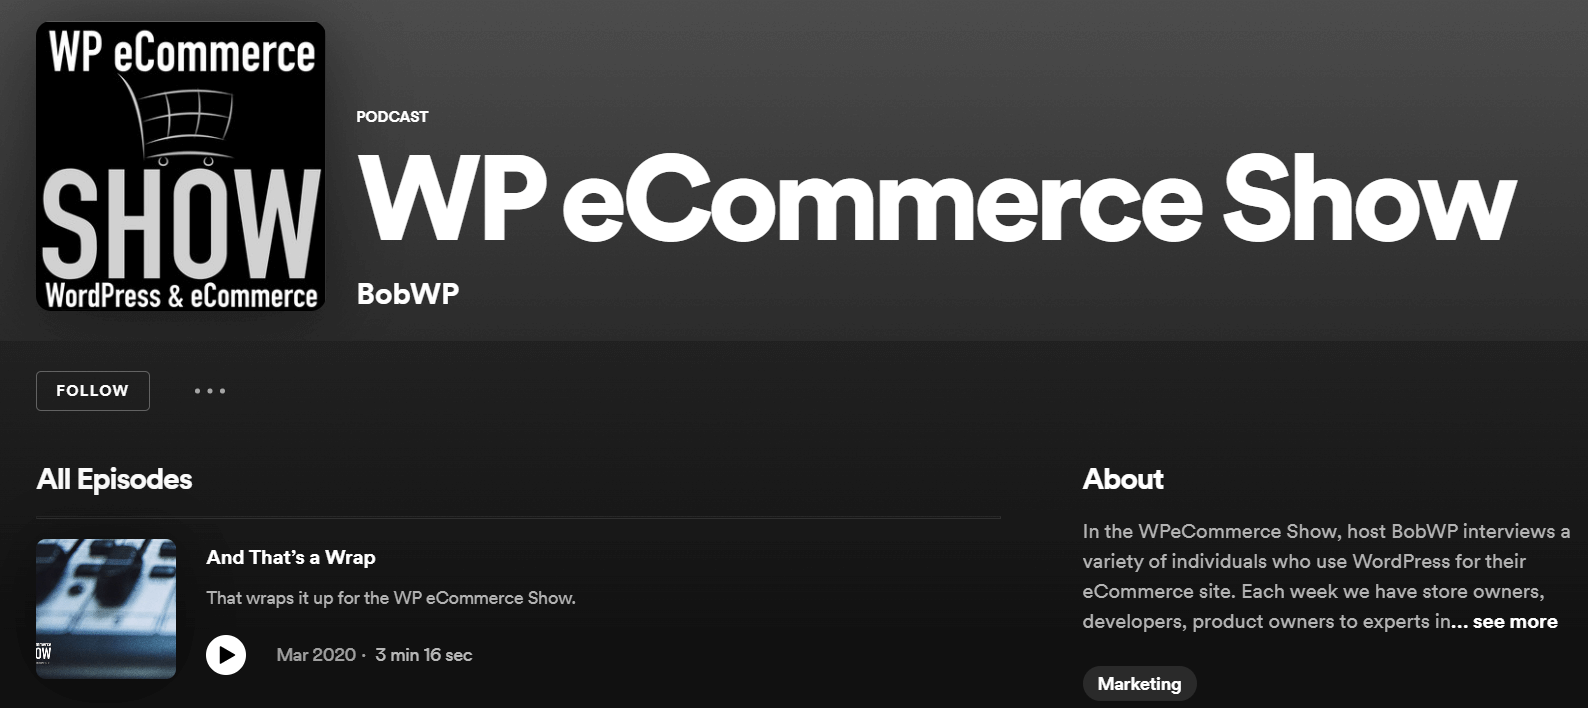 wp ecommerce show